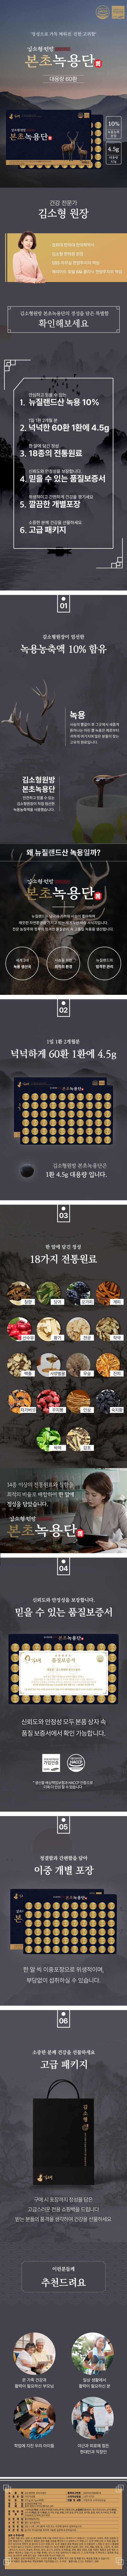 kimsohyung_bonchonko_4.5x60_info.jpg